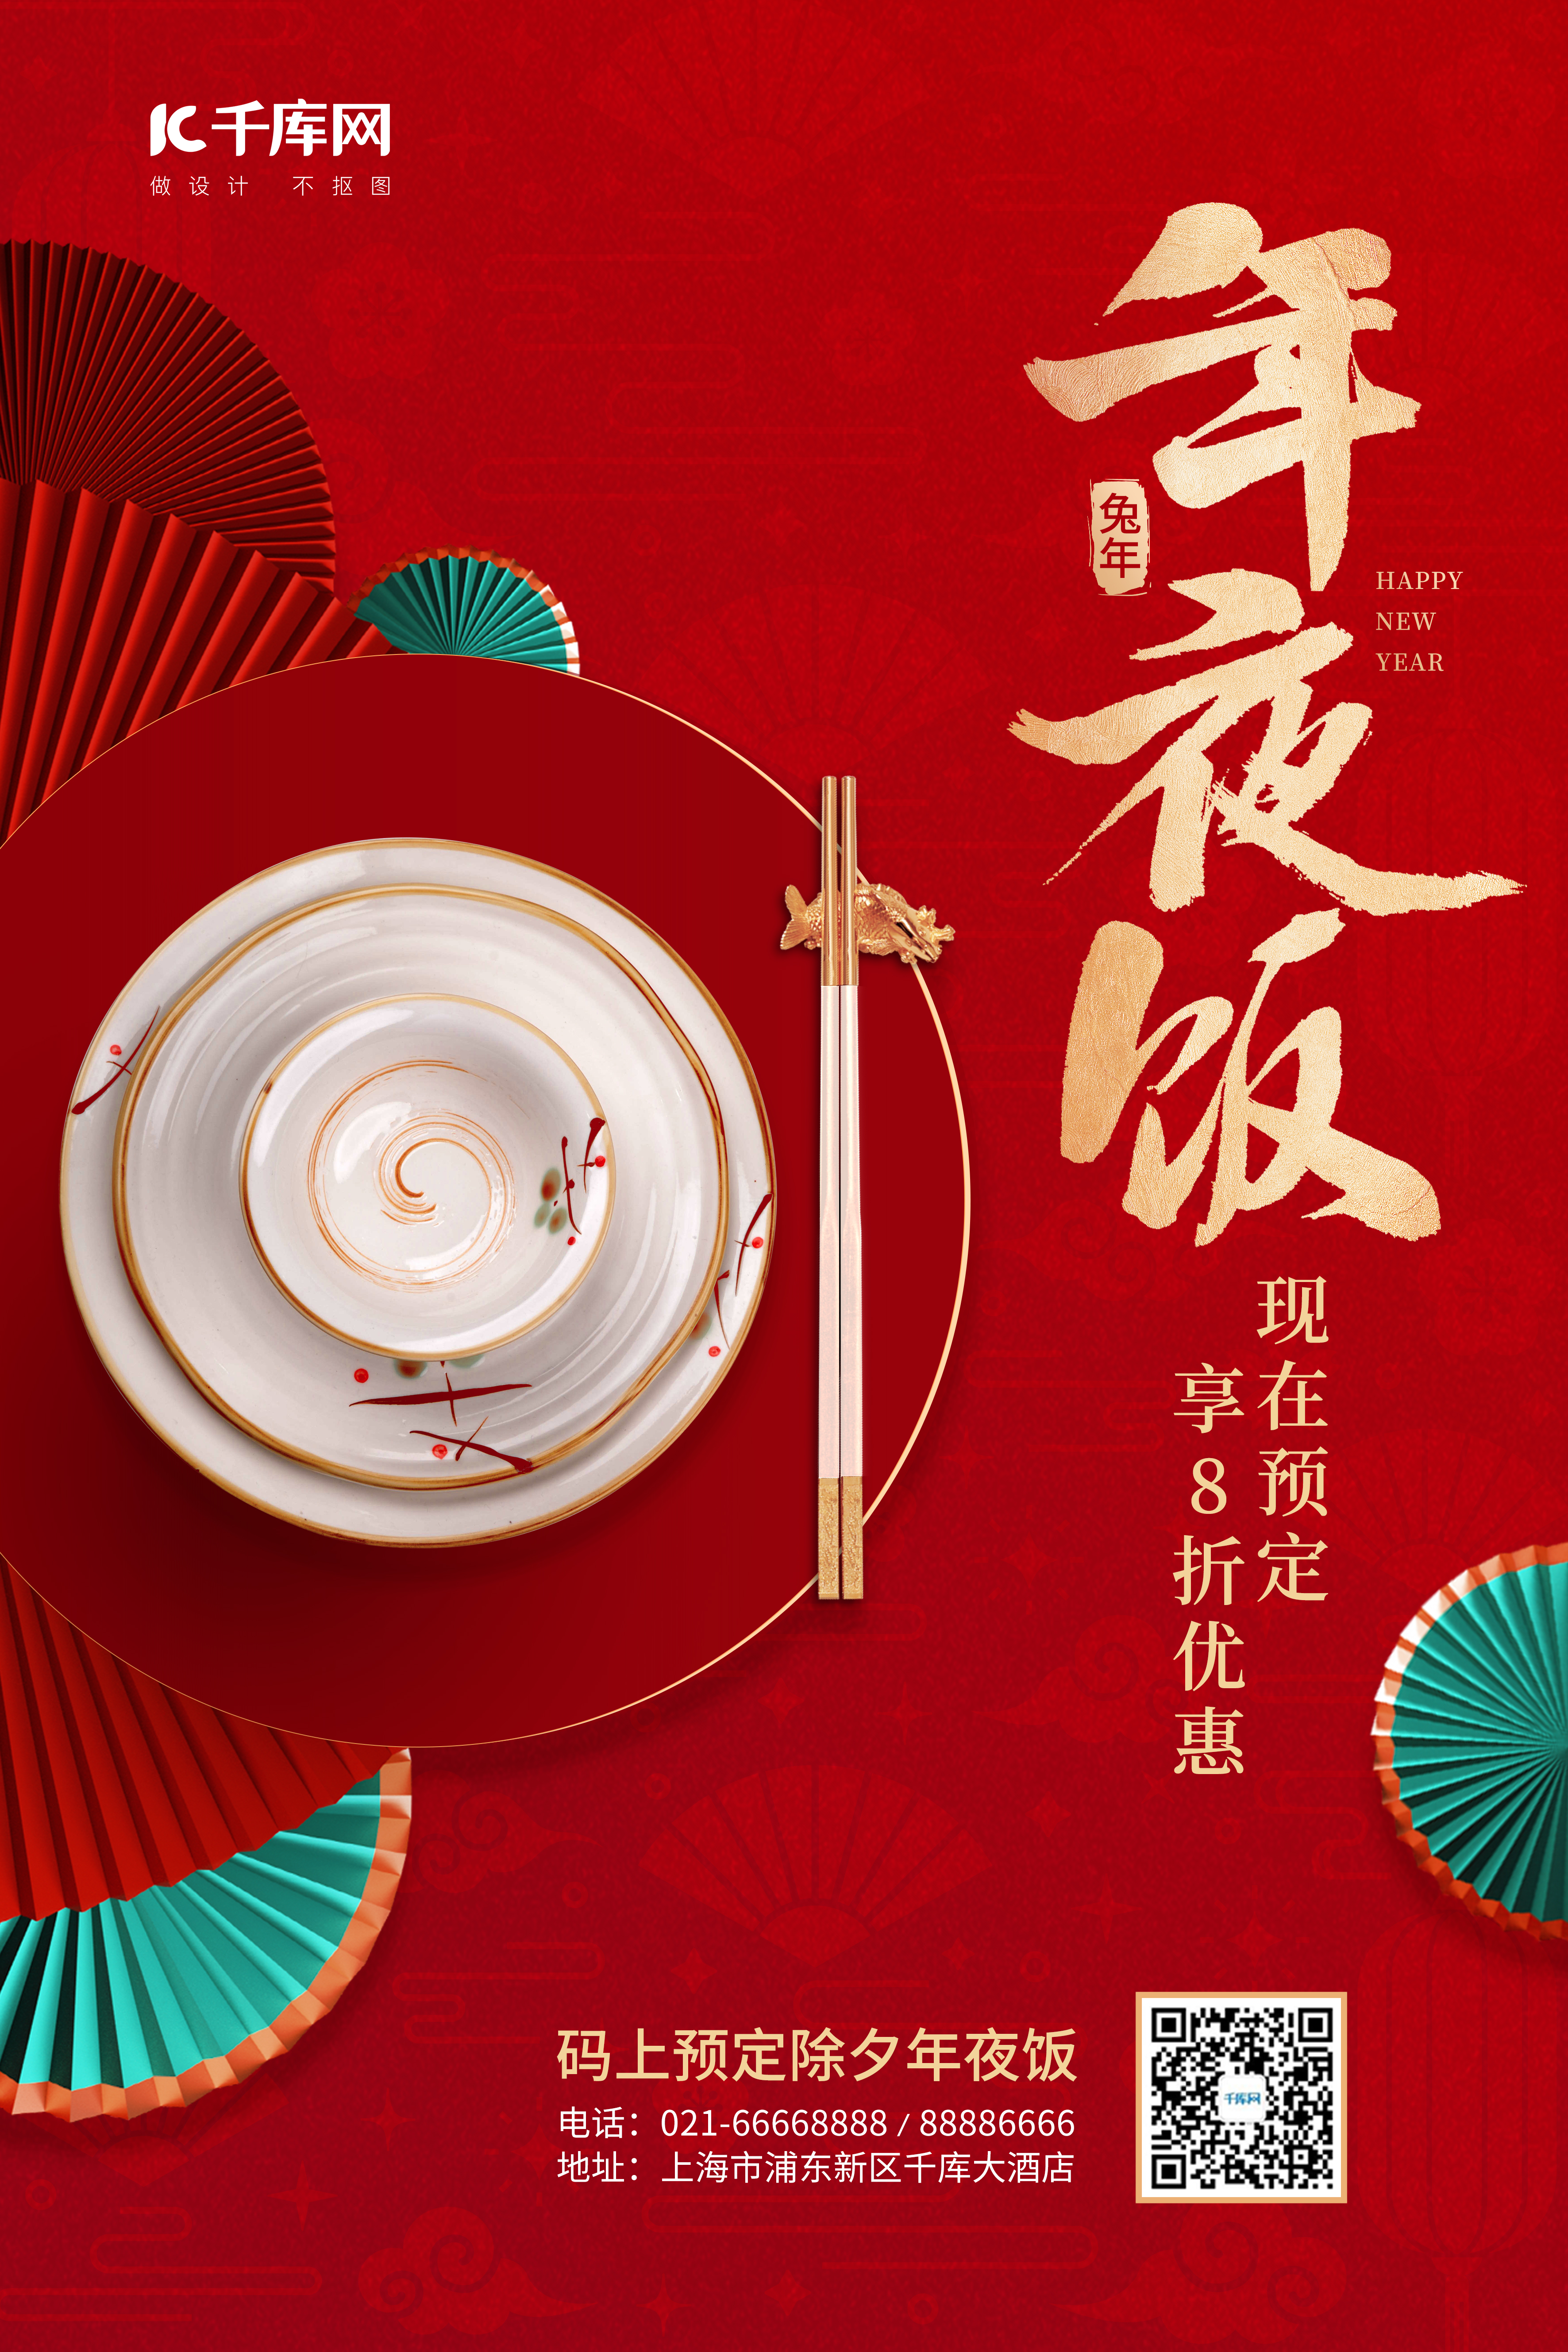 春节除夕年夜饭预定酒店促销红色中国风海报图片